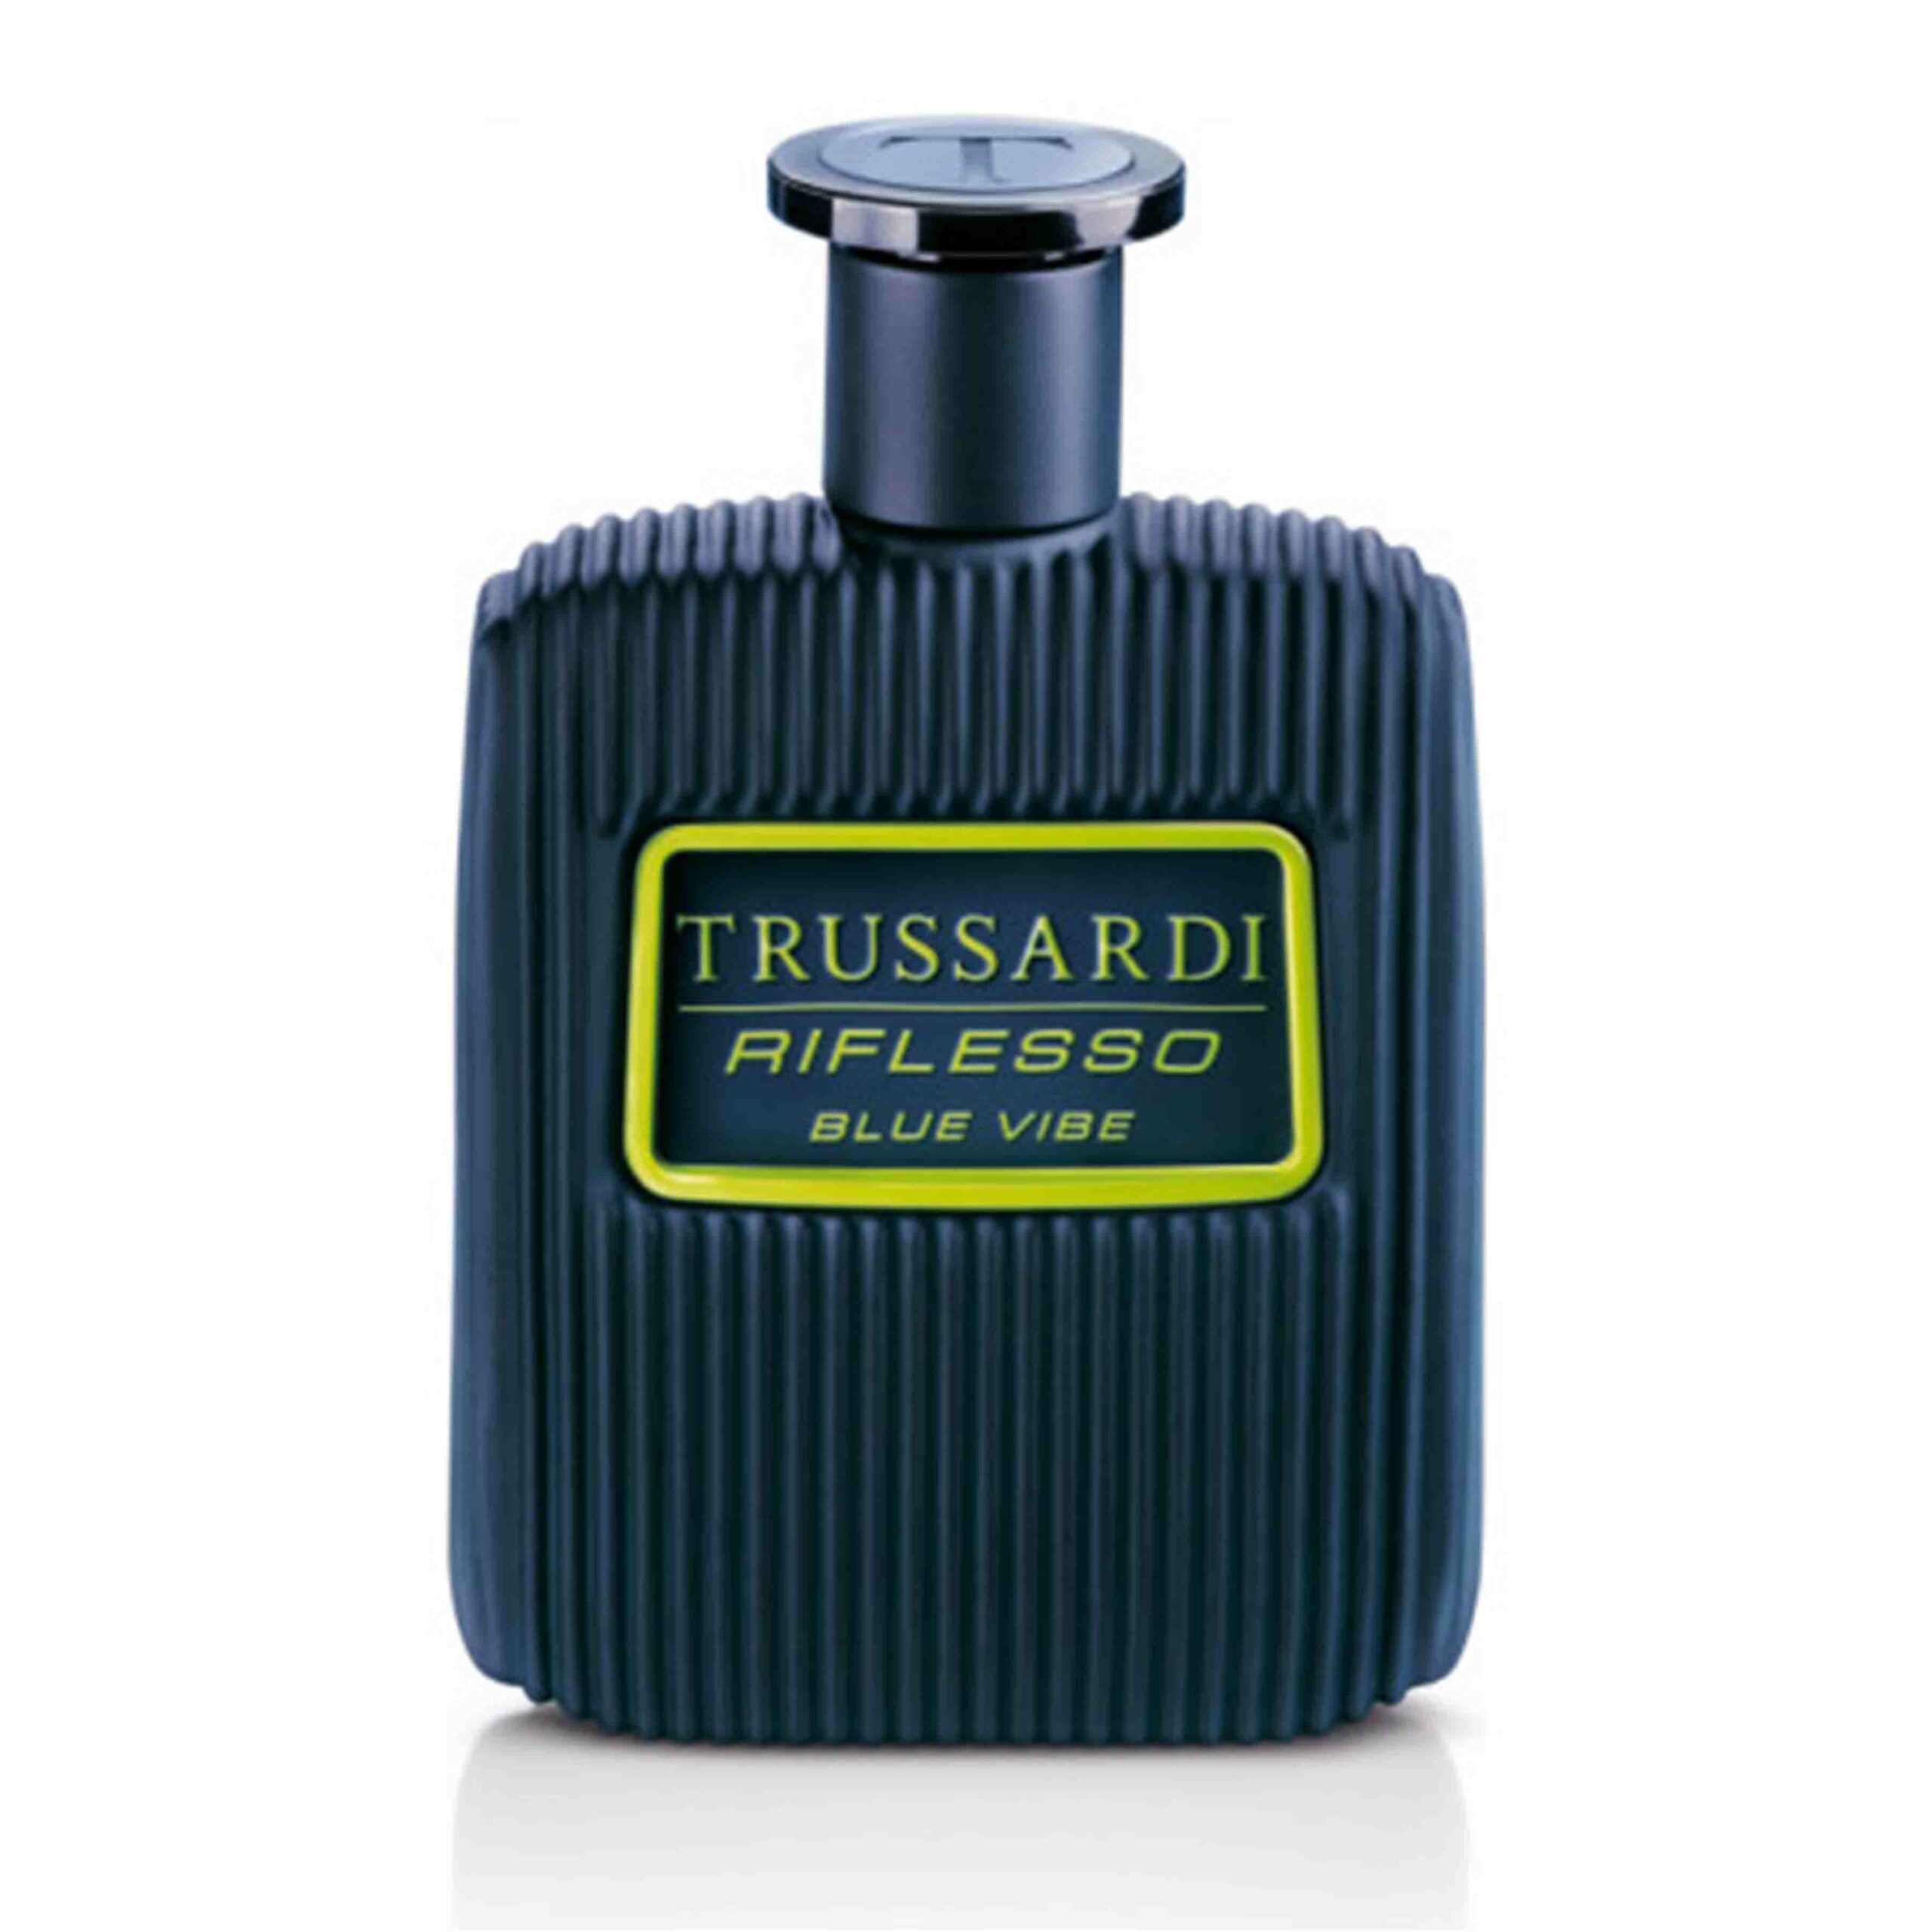 Die besten Parfums für Männer 2021: Trussardi - Riflesso Blue Vibe